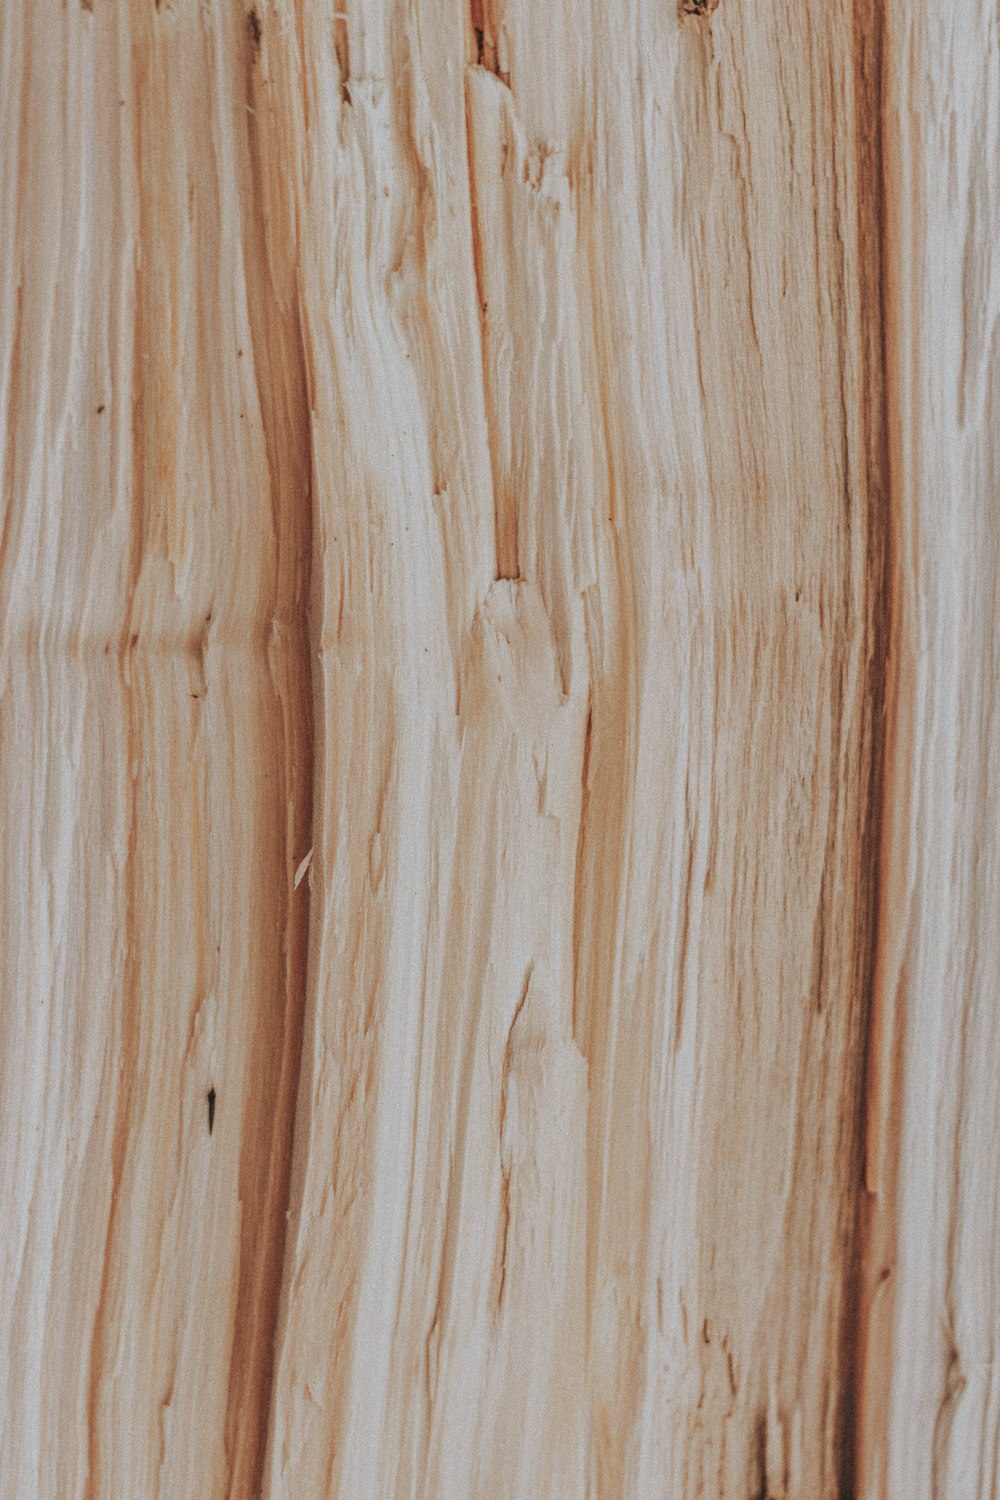 superficie in legno marrone e bianco